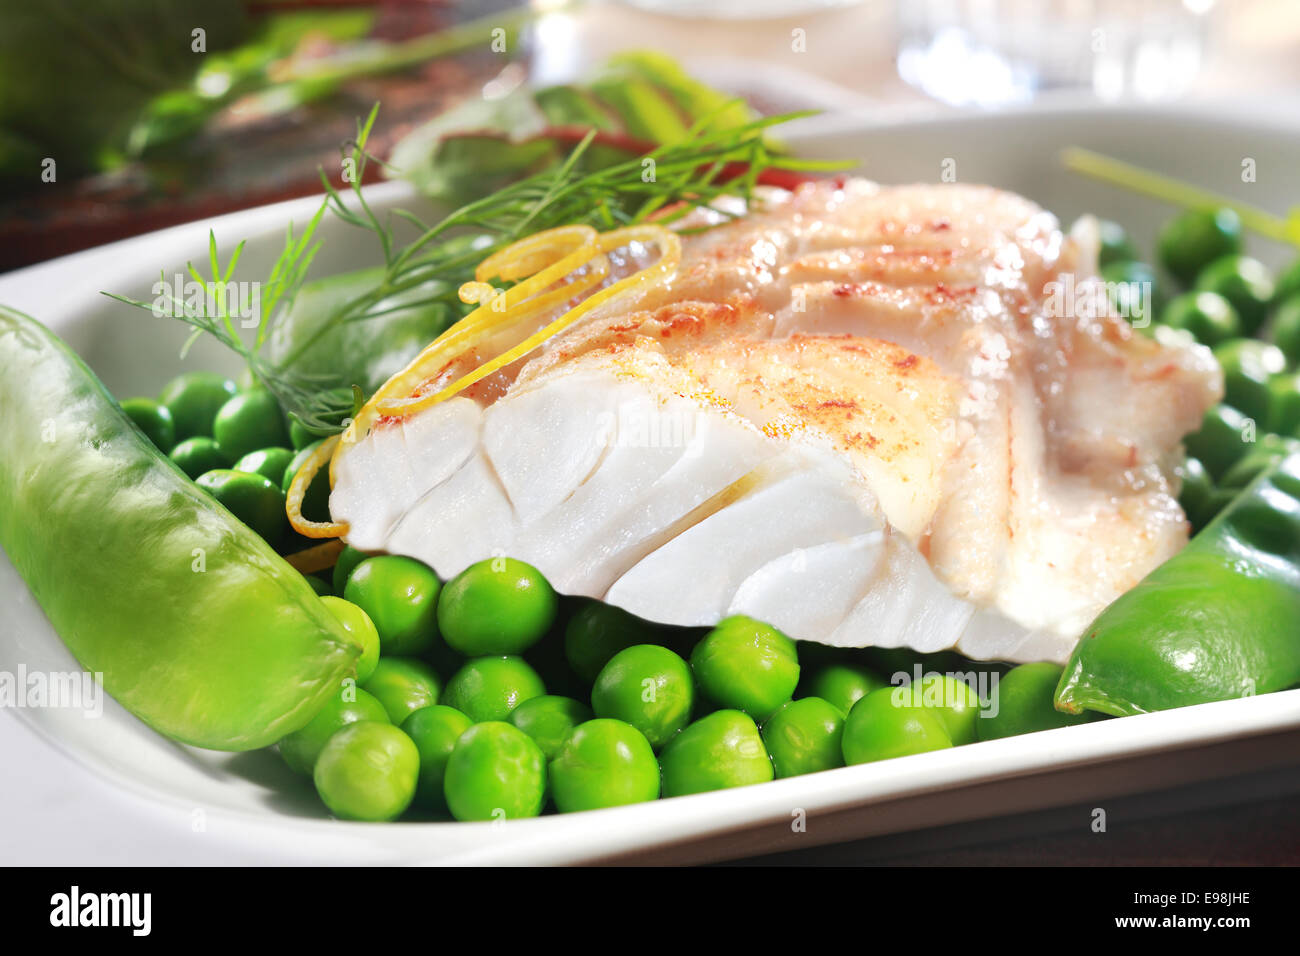 Una sana grigliate di pesce bistecca con piselli, mangetouts e la scorza di limone servita su un piatto come antipasto o piatto principale Foto Stock